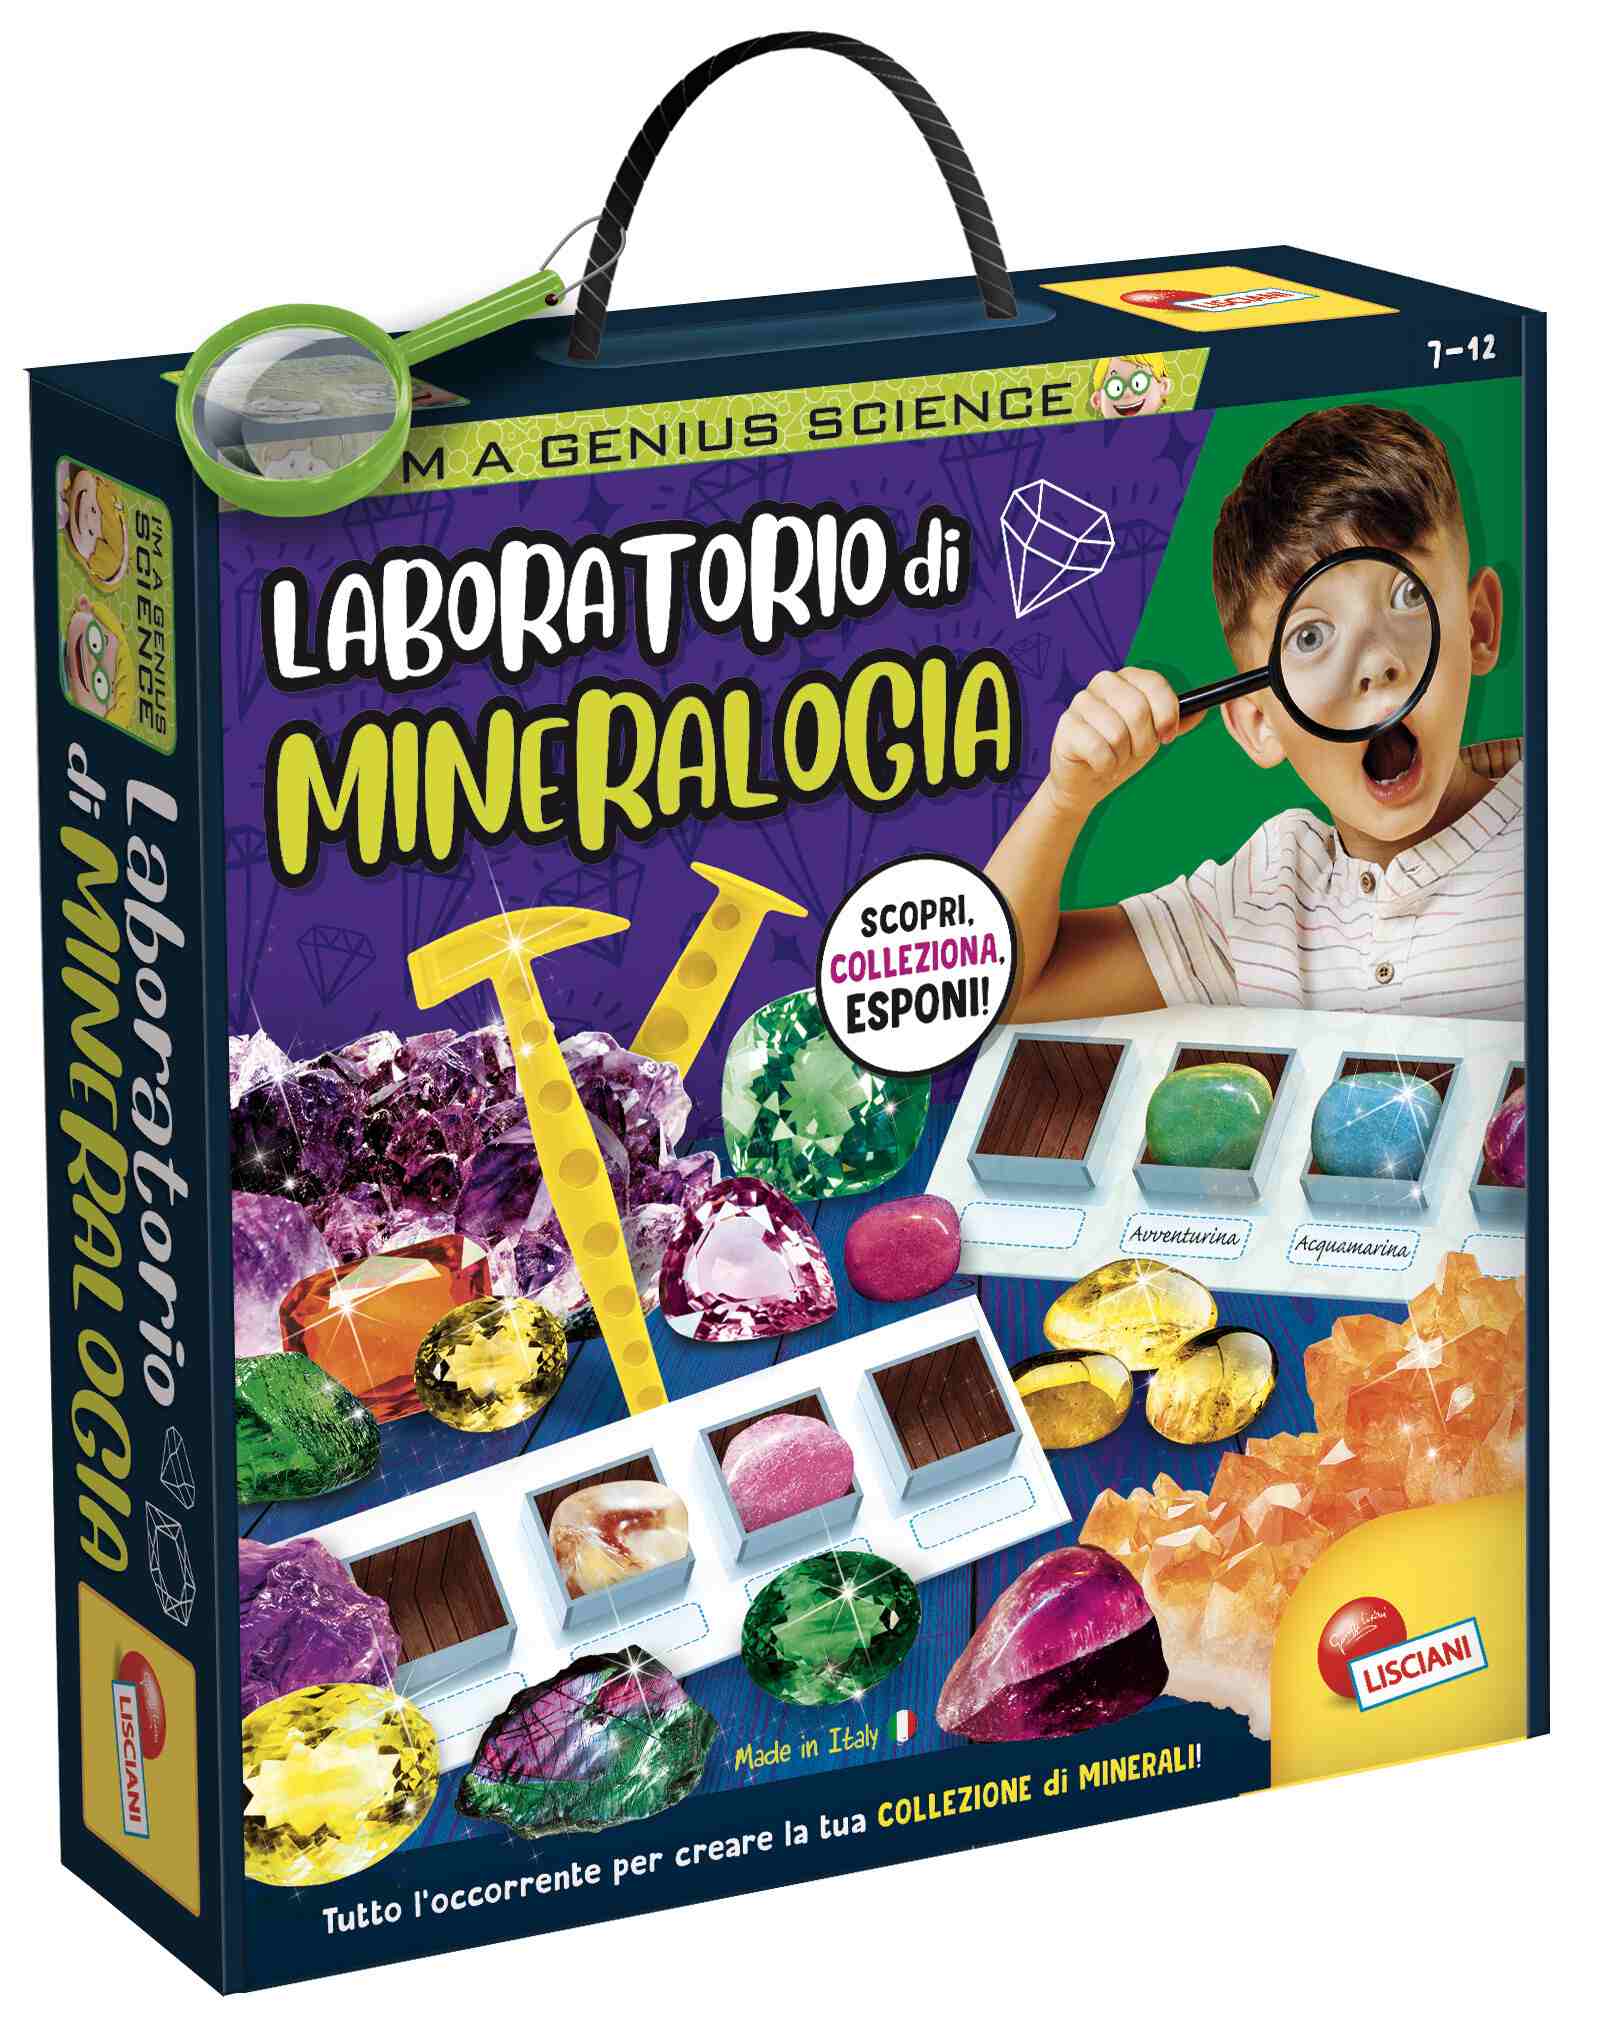 I'm a genius laboratorio di mineralogia - LISCIANI